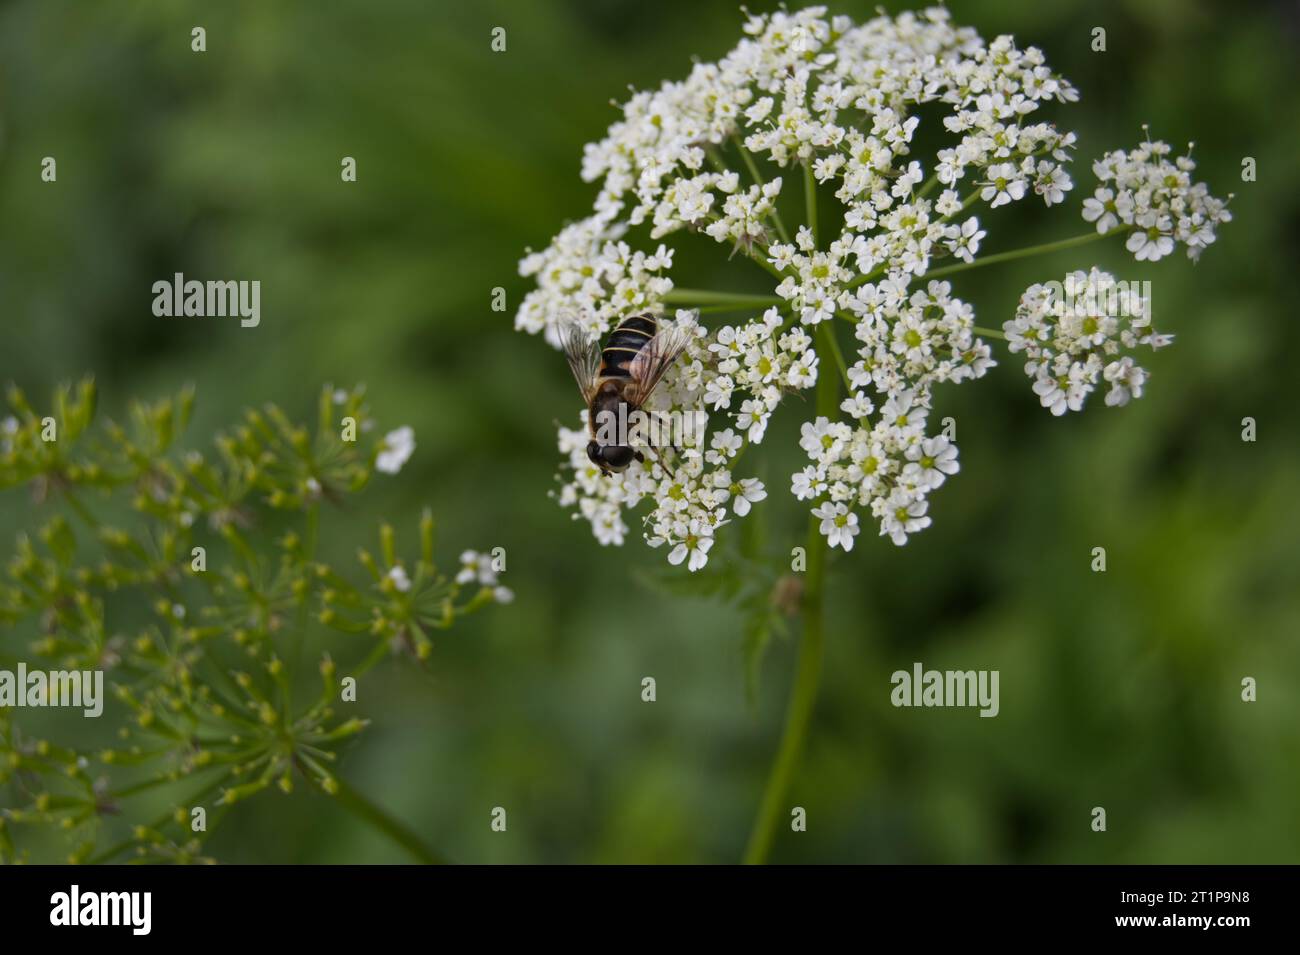 Biene auf Waldblume Foto Stock